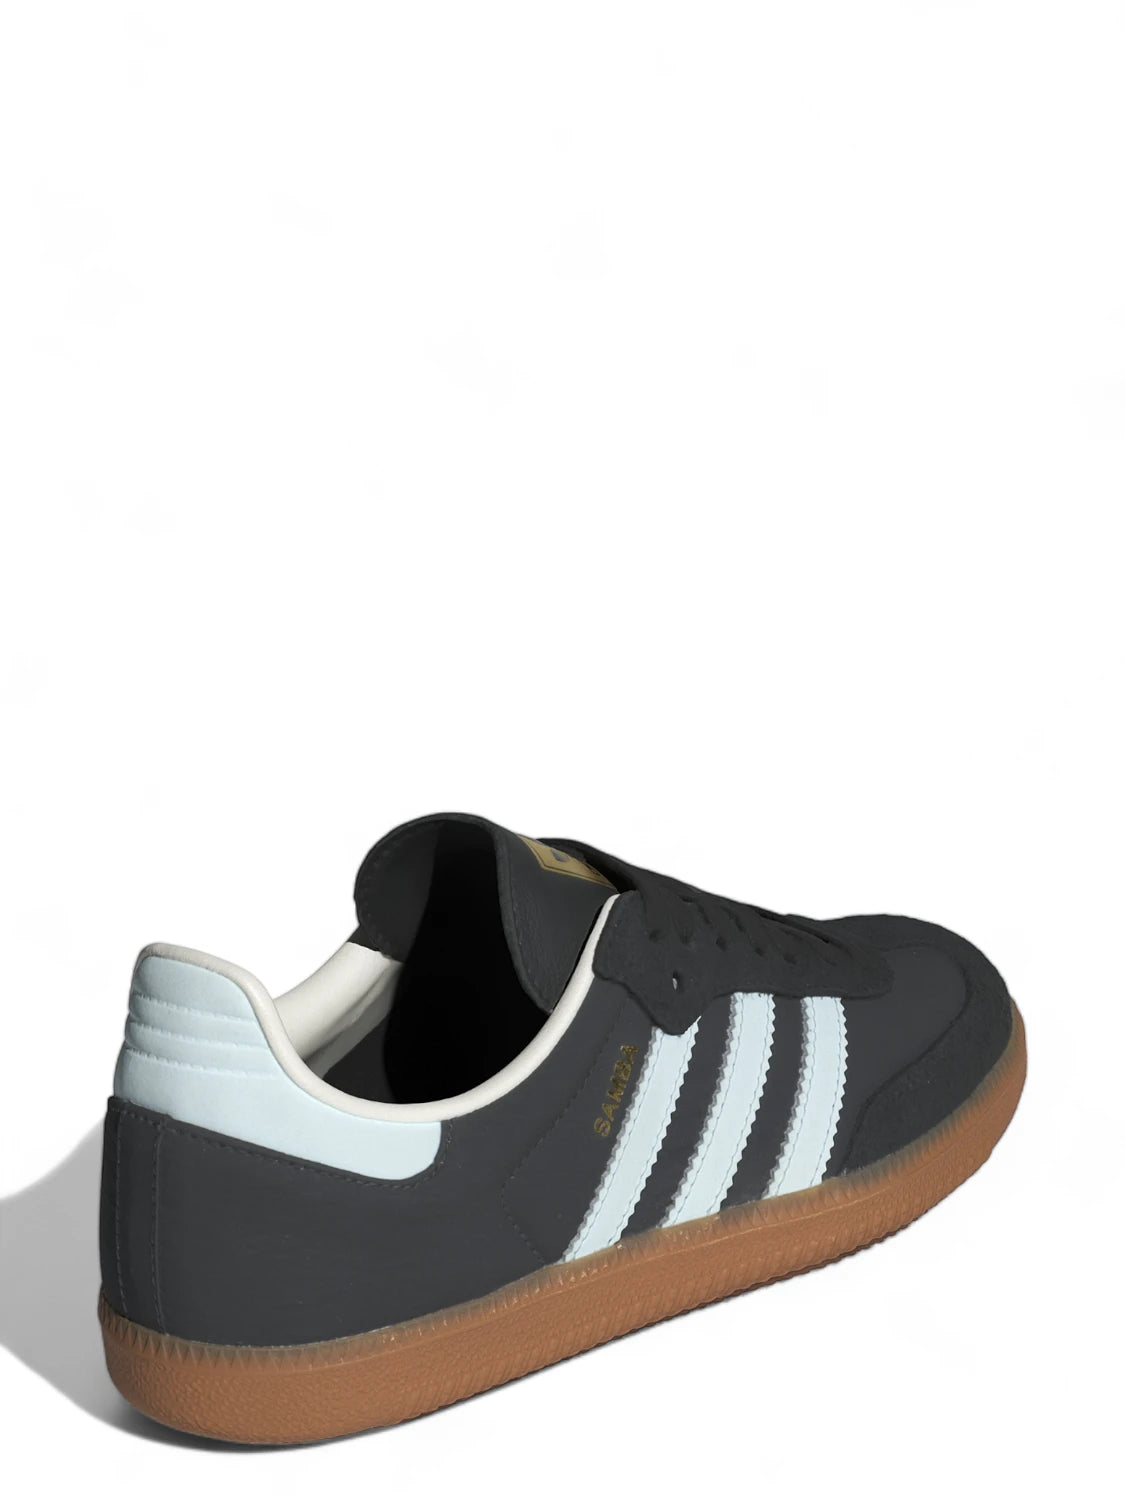 Adidas Samba OG W Grigio-Adidas Originals-Sneakers-Vittorio Citro Boutique